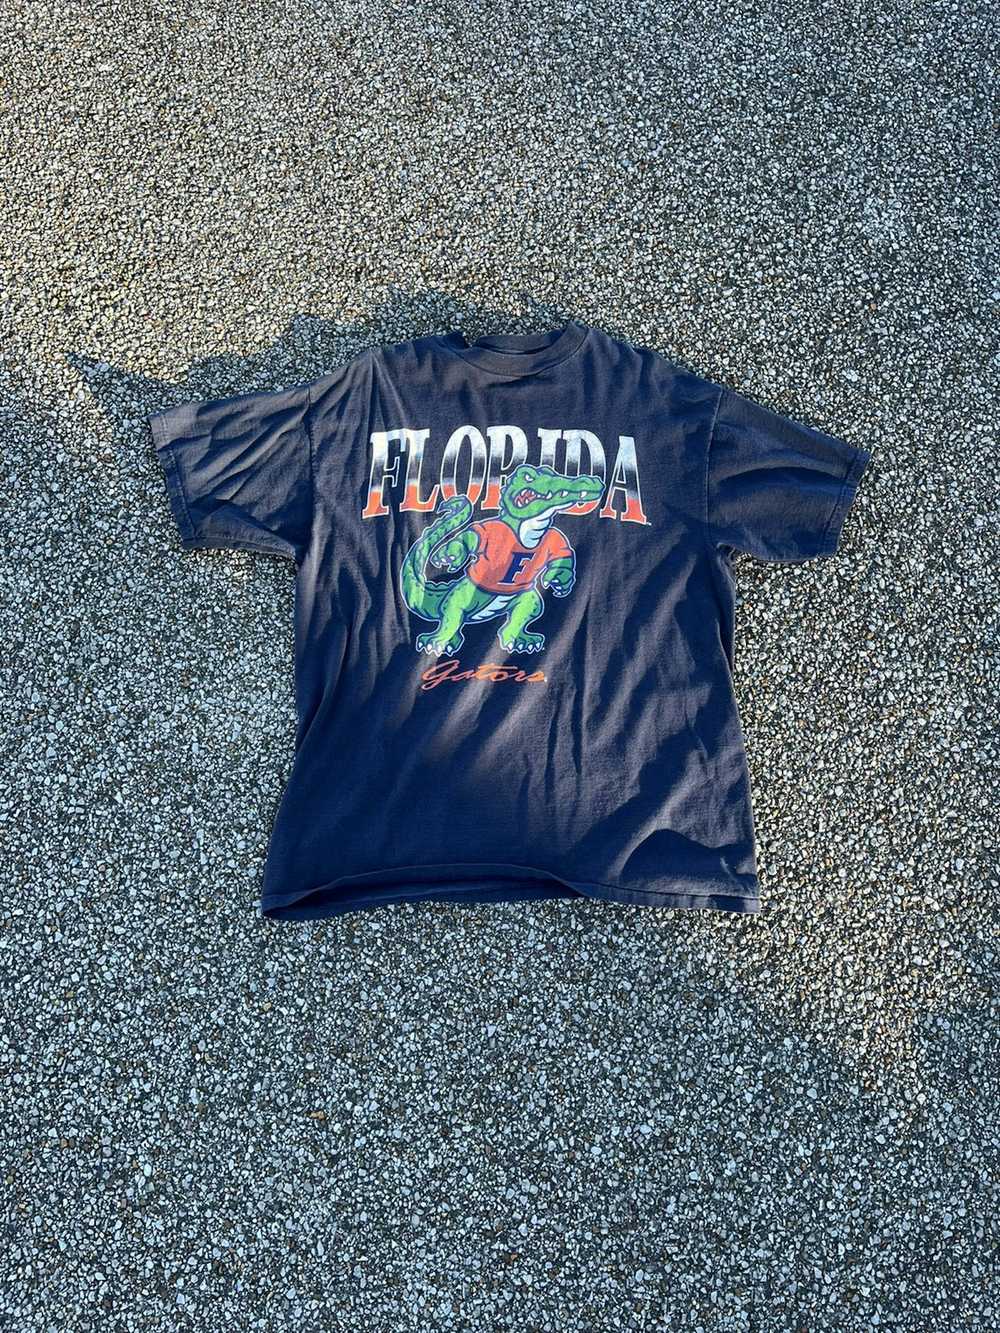 Florida Gators × Ncaa × Vintage Vintage 90s Flori… - image 1